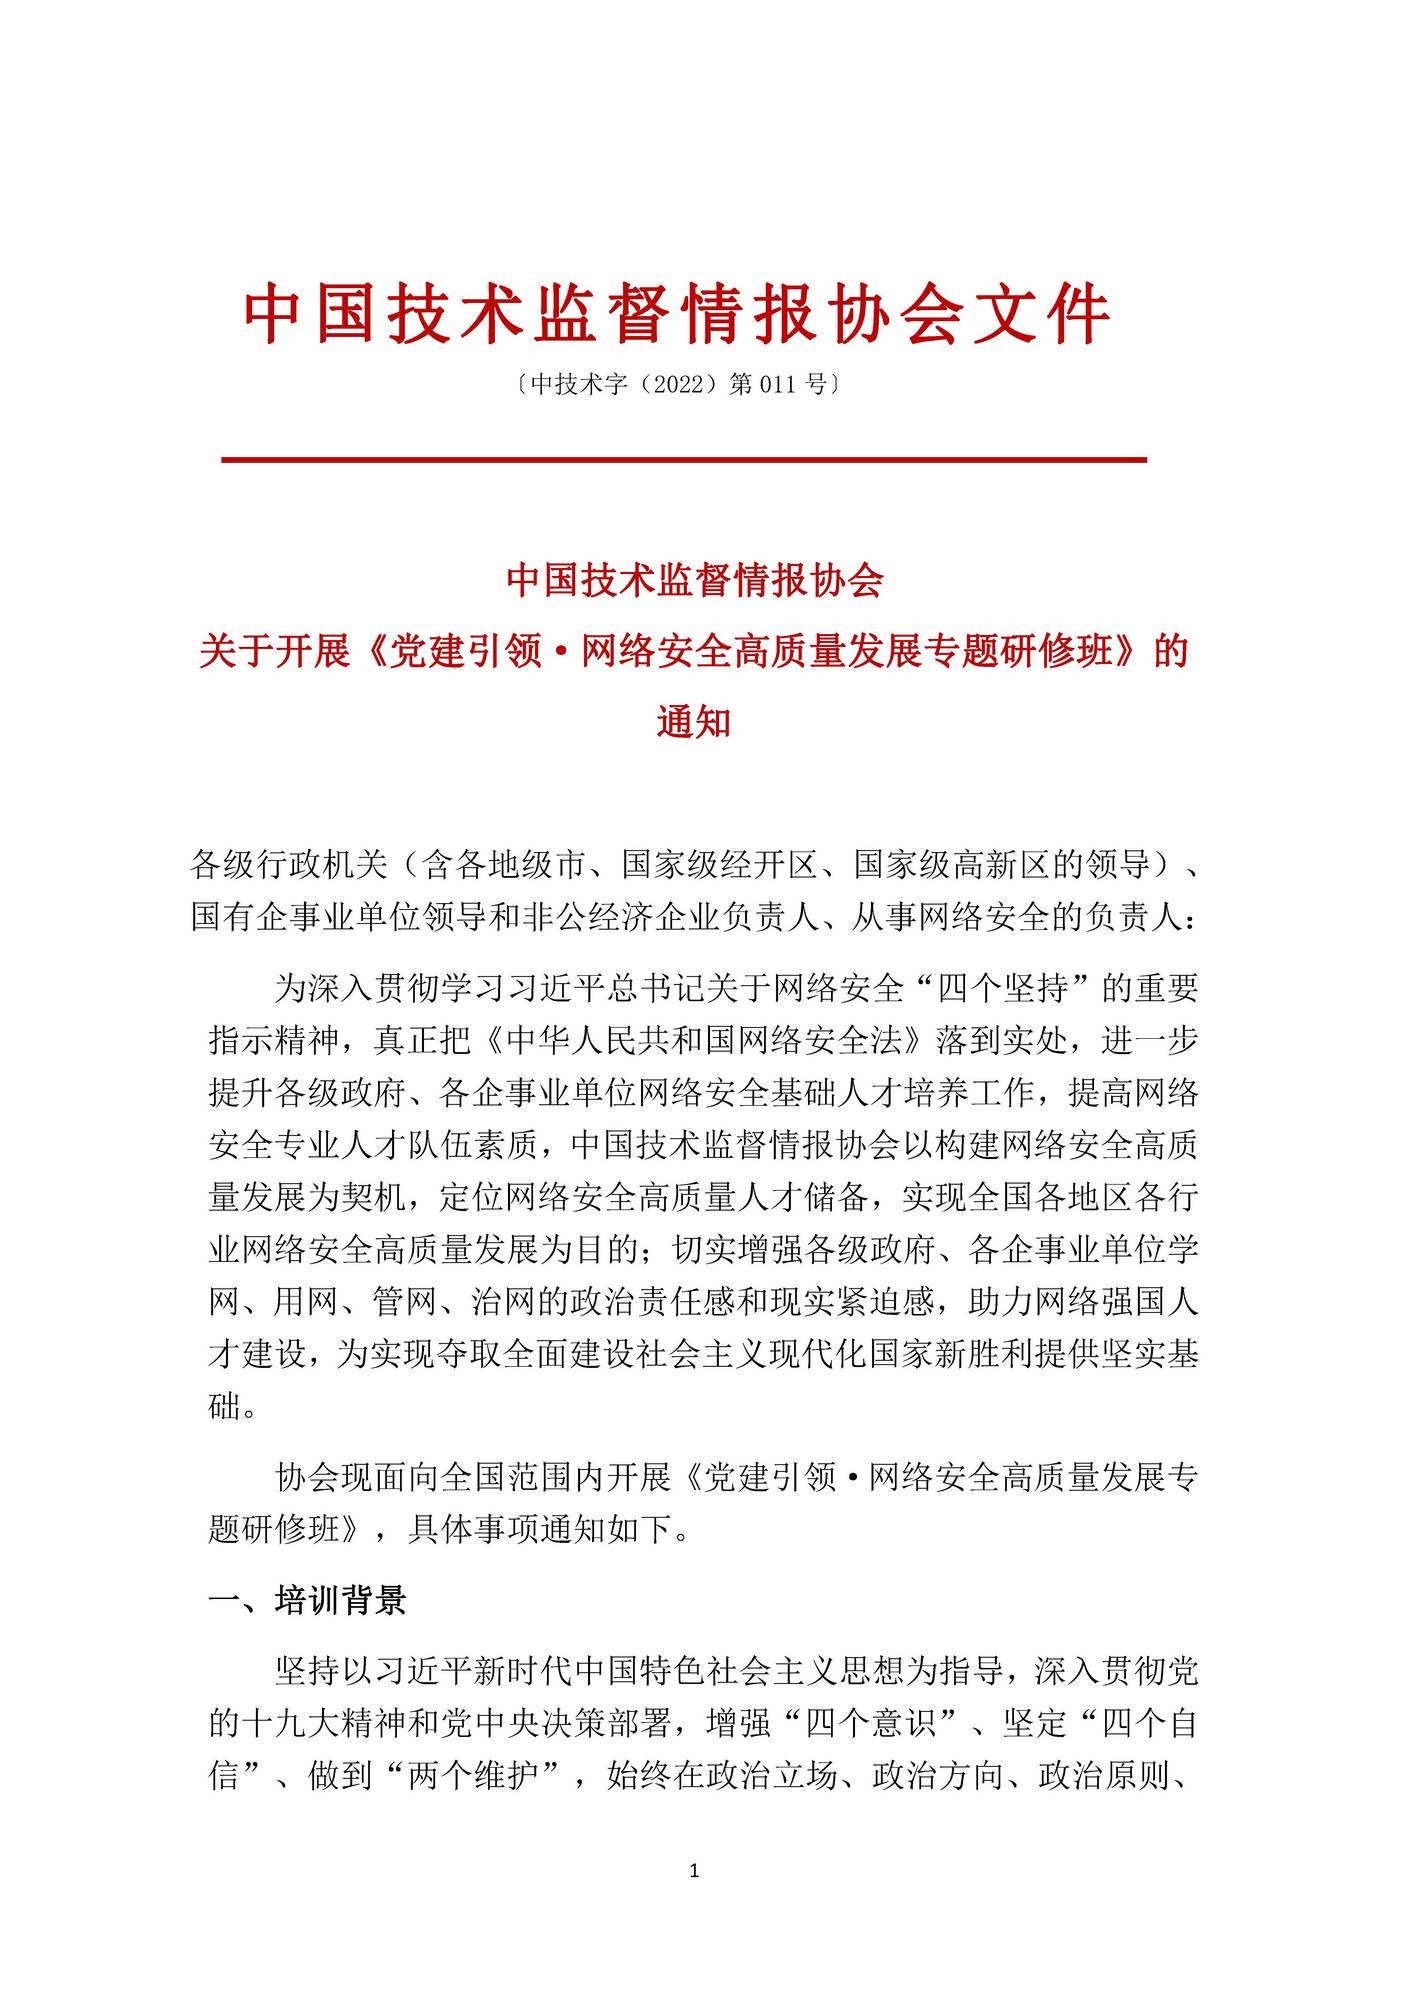 转发“中国技术监督情报协会关于开展《党建引领·网络安全高质量发展专题研修班》的通知”